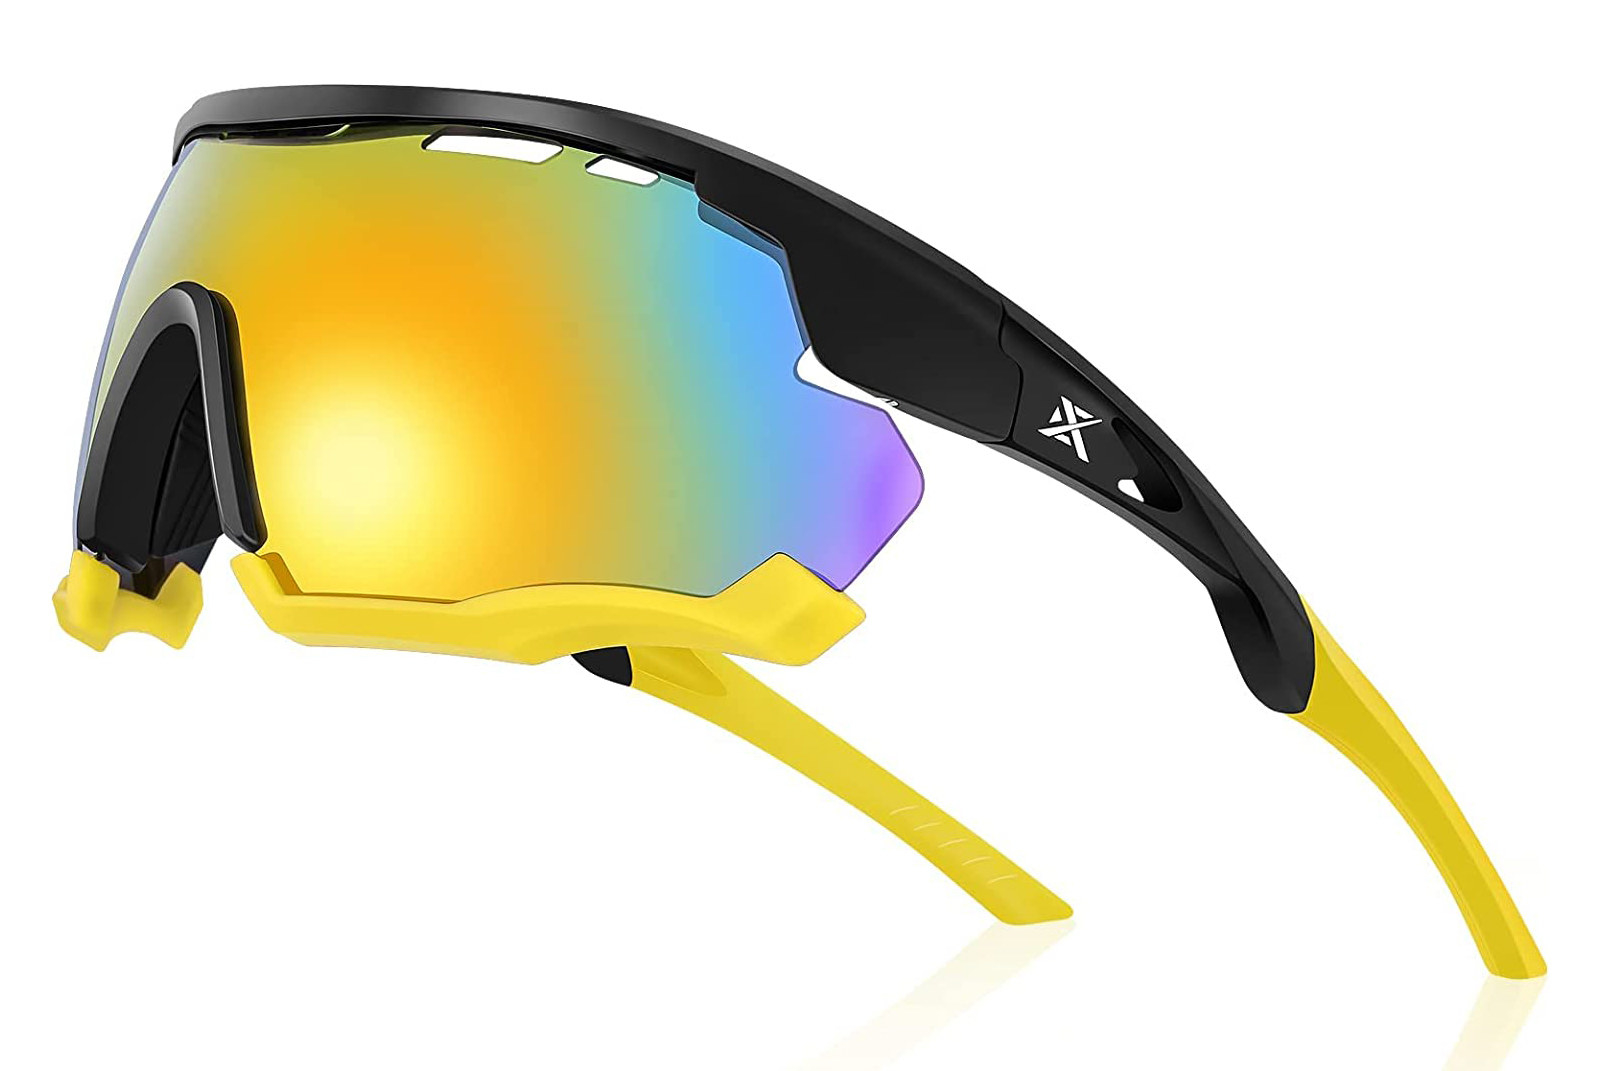 An image of Extremus Matterhorn sunglasses